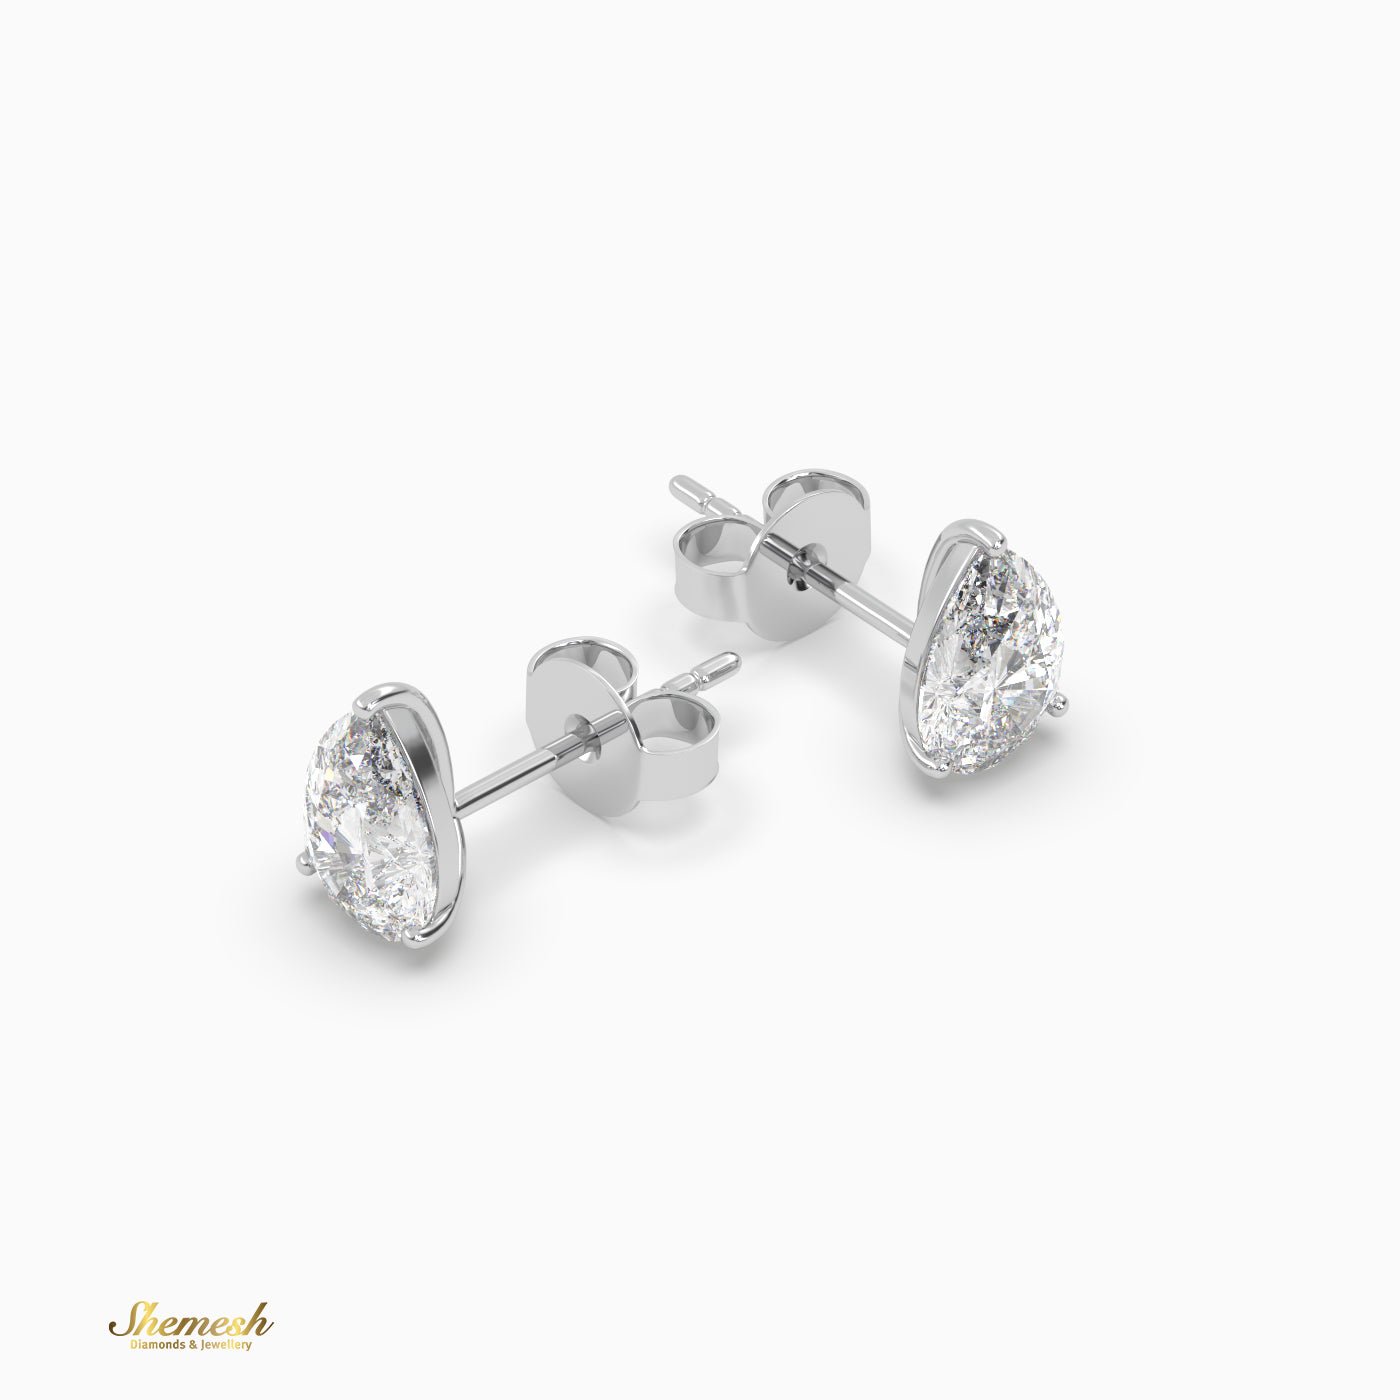 Pear Cut 3 prongs Diamond Stud Earrings - shemesh_diamonds